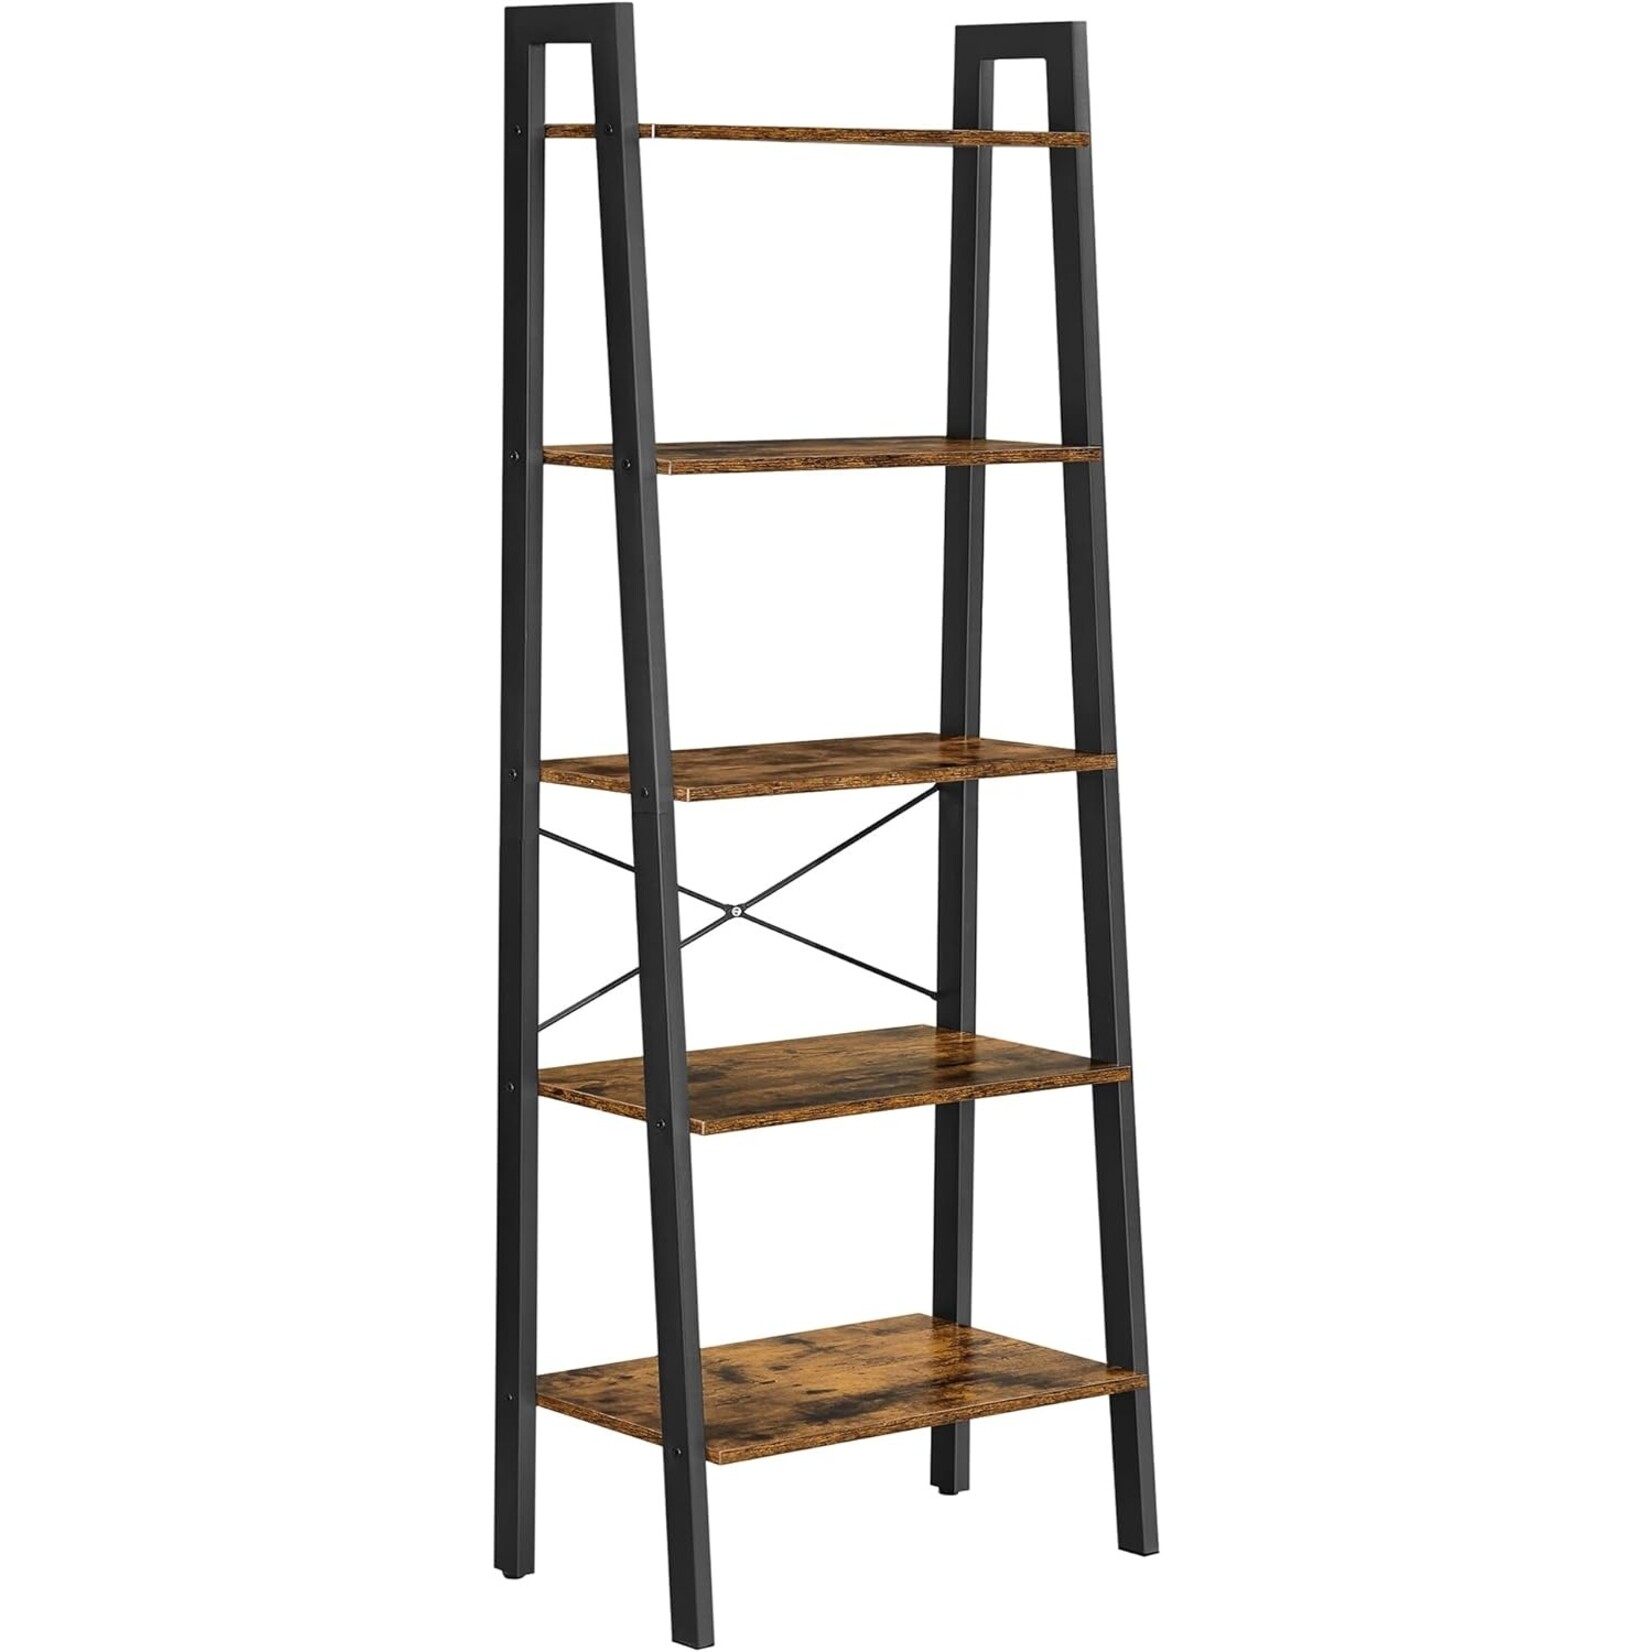 Bobbel Home Boekenkast Industrieel - Boekenstandaard - Ladderkast 5 Laags 56 x 34 x 172 cm